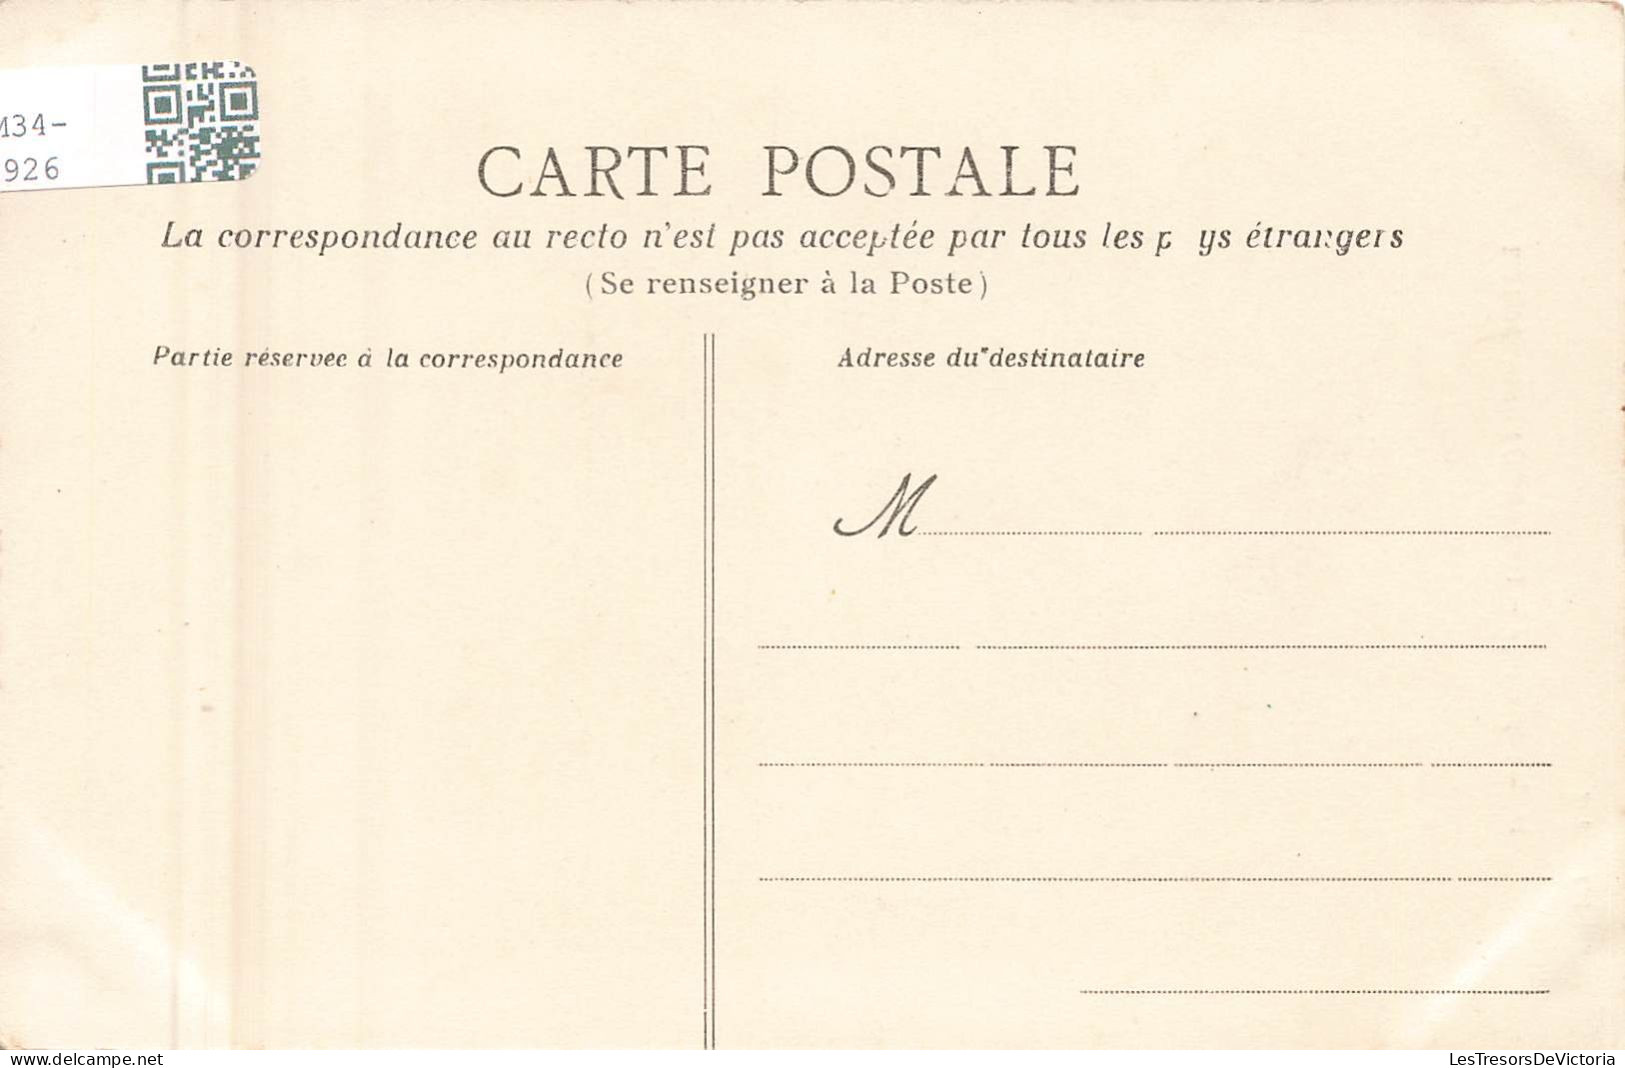 FRANCE - Le Pouliguen (Loire Inf) - Abside De L'église - HT - Carte Postale Ancienne - Le Pouliguen